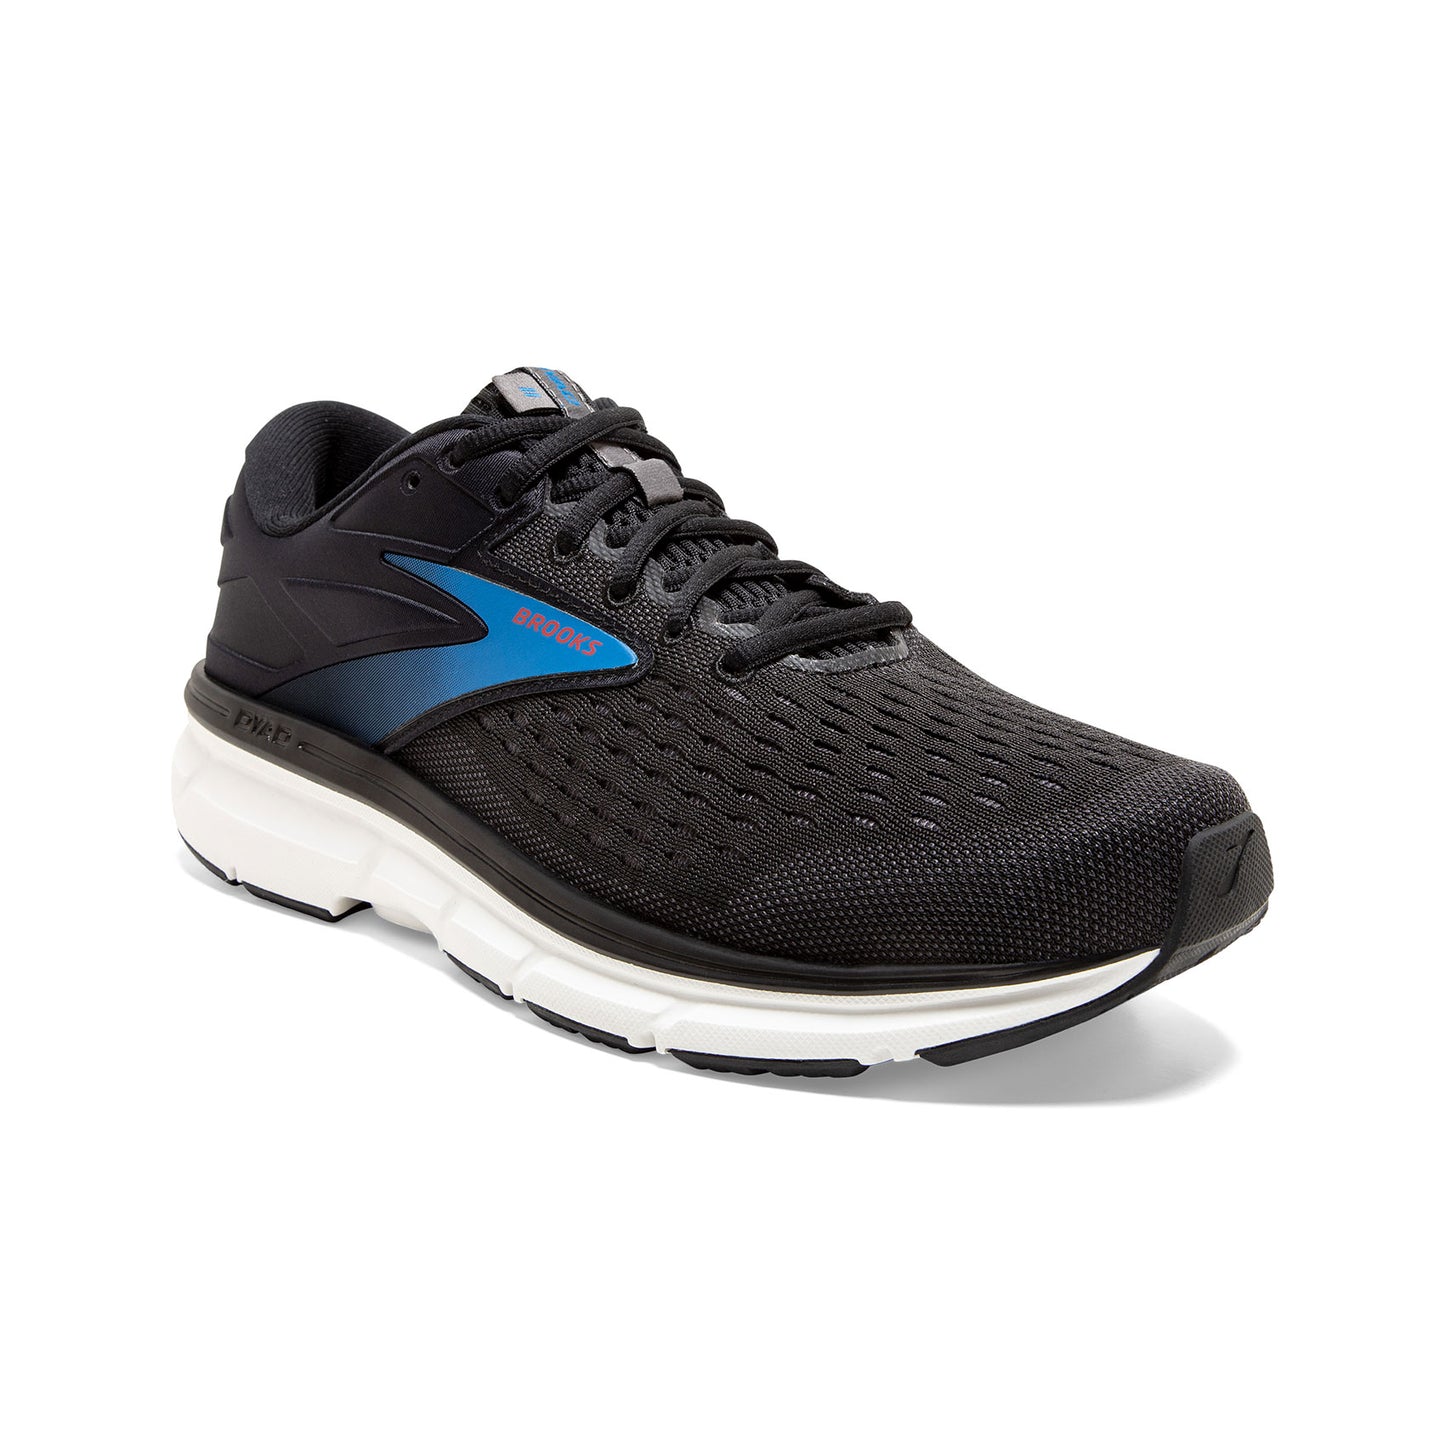 Men's Dyad 11 Running Shoe - Black/Ebony/Blue - Regular (D)